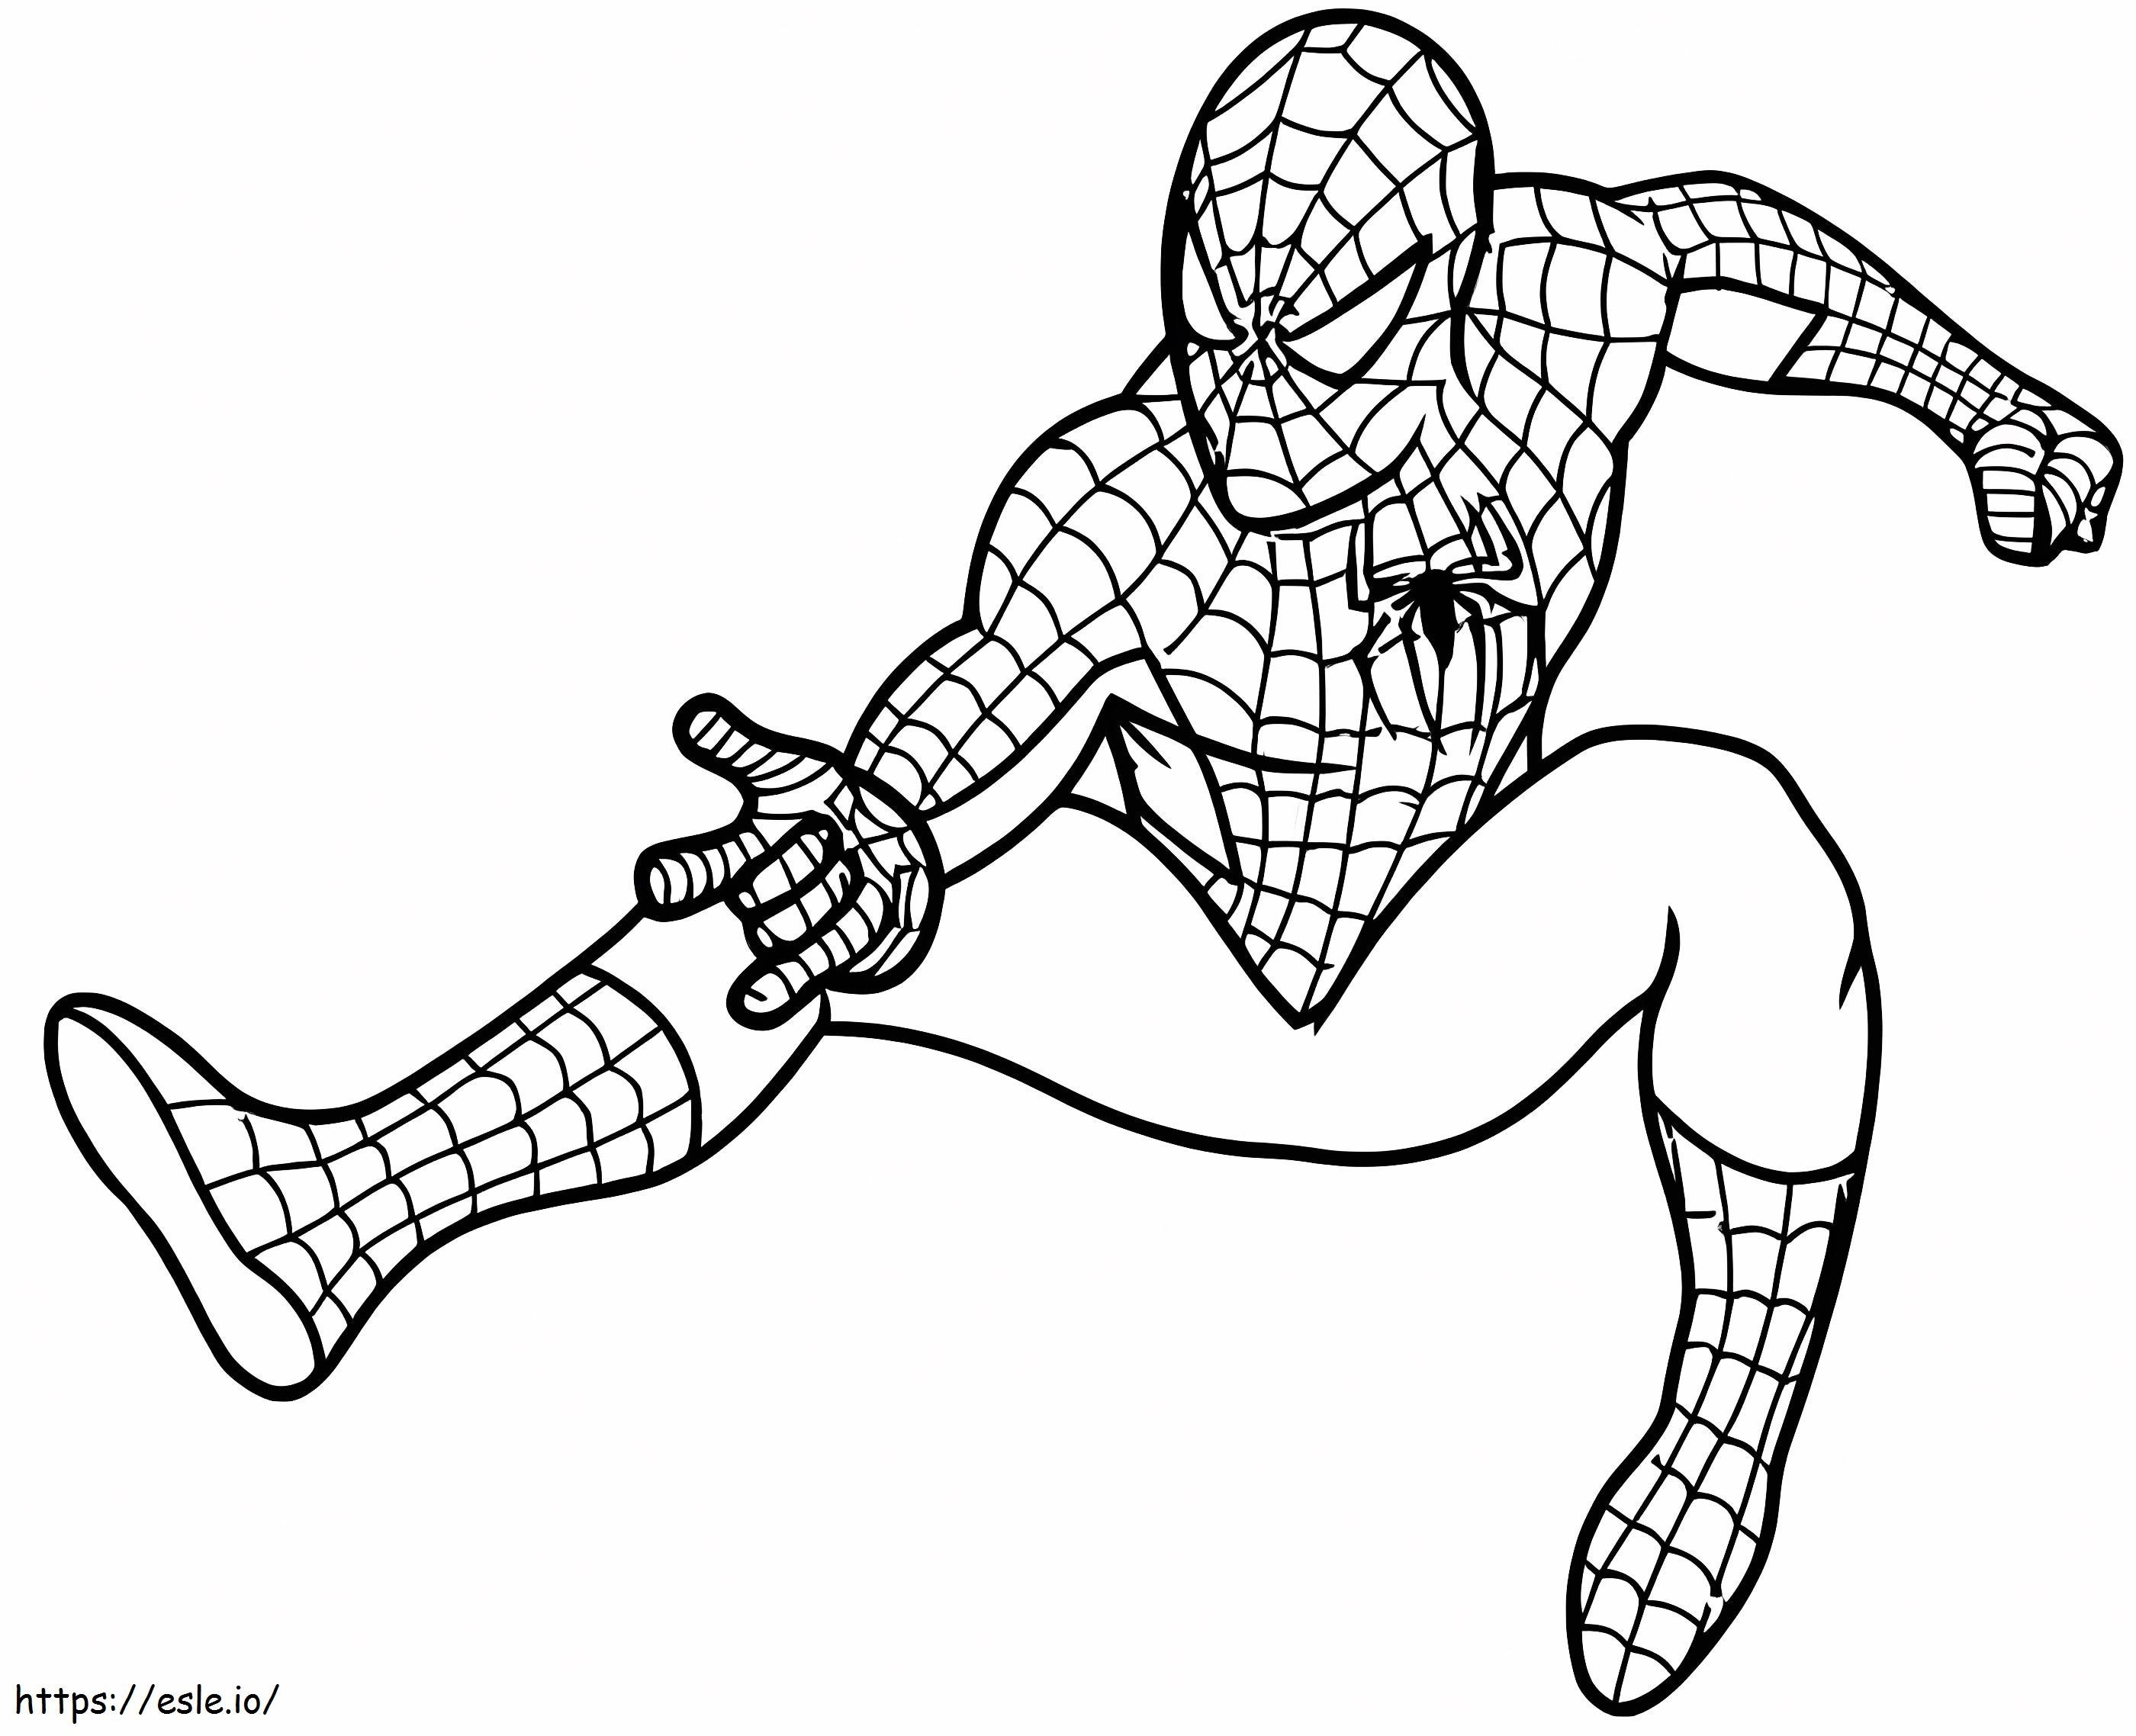 Kostenlose Bilder von Spider Man ausmalbilder